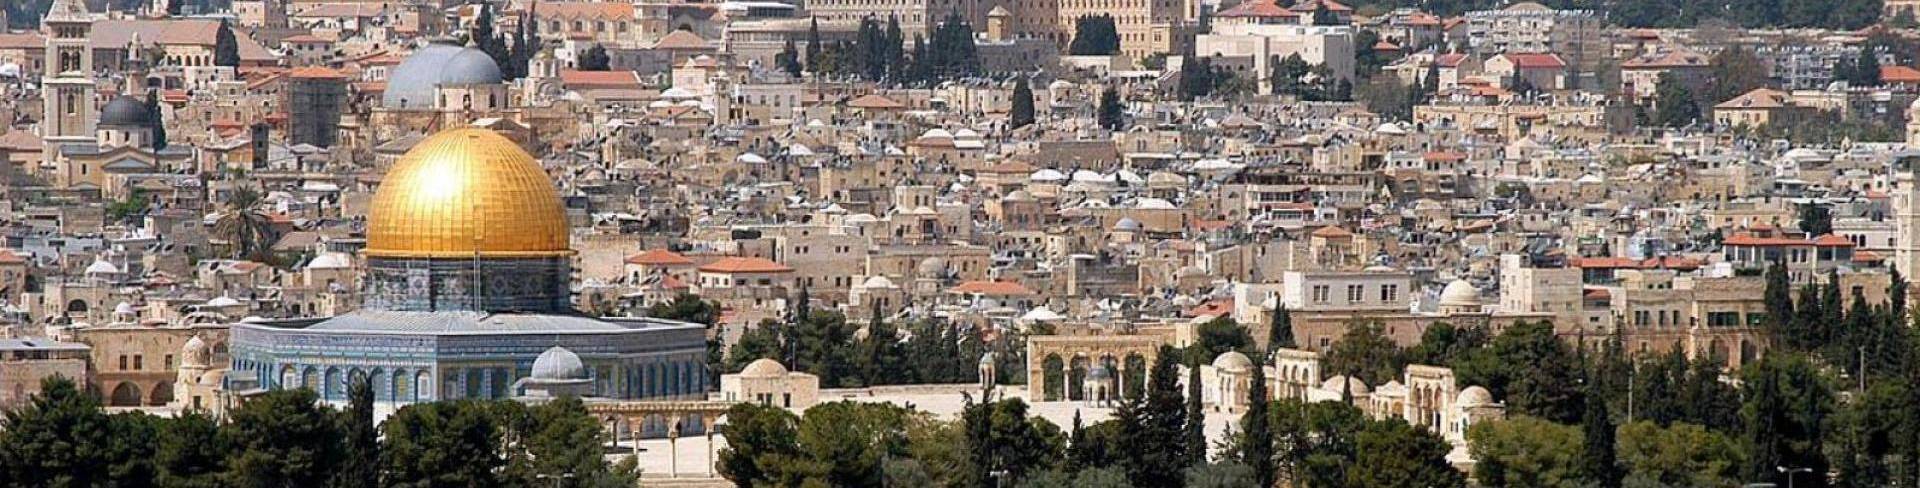 Иерусалим - город в Израиле